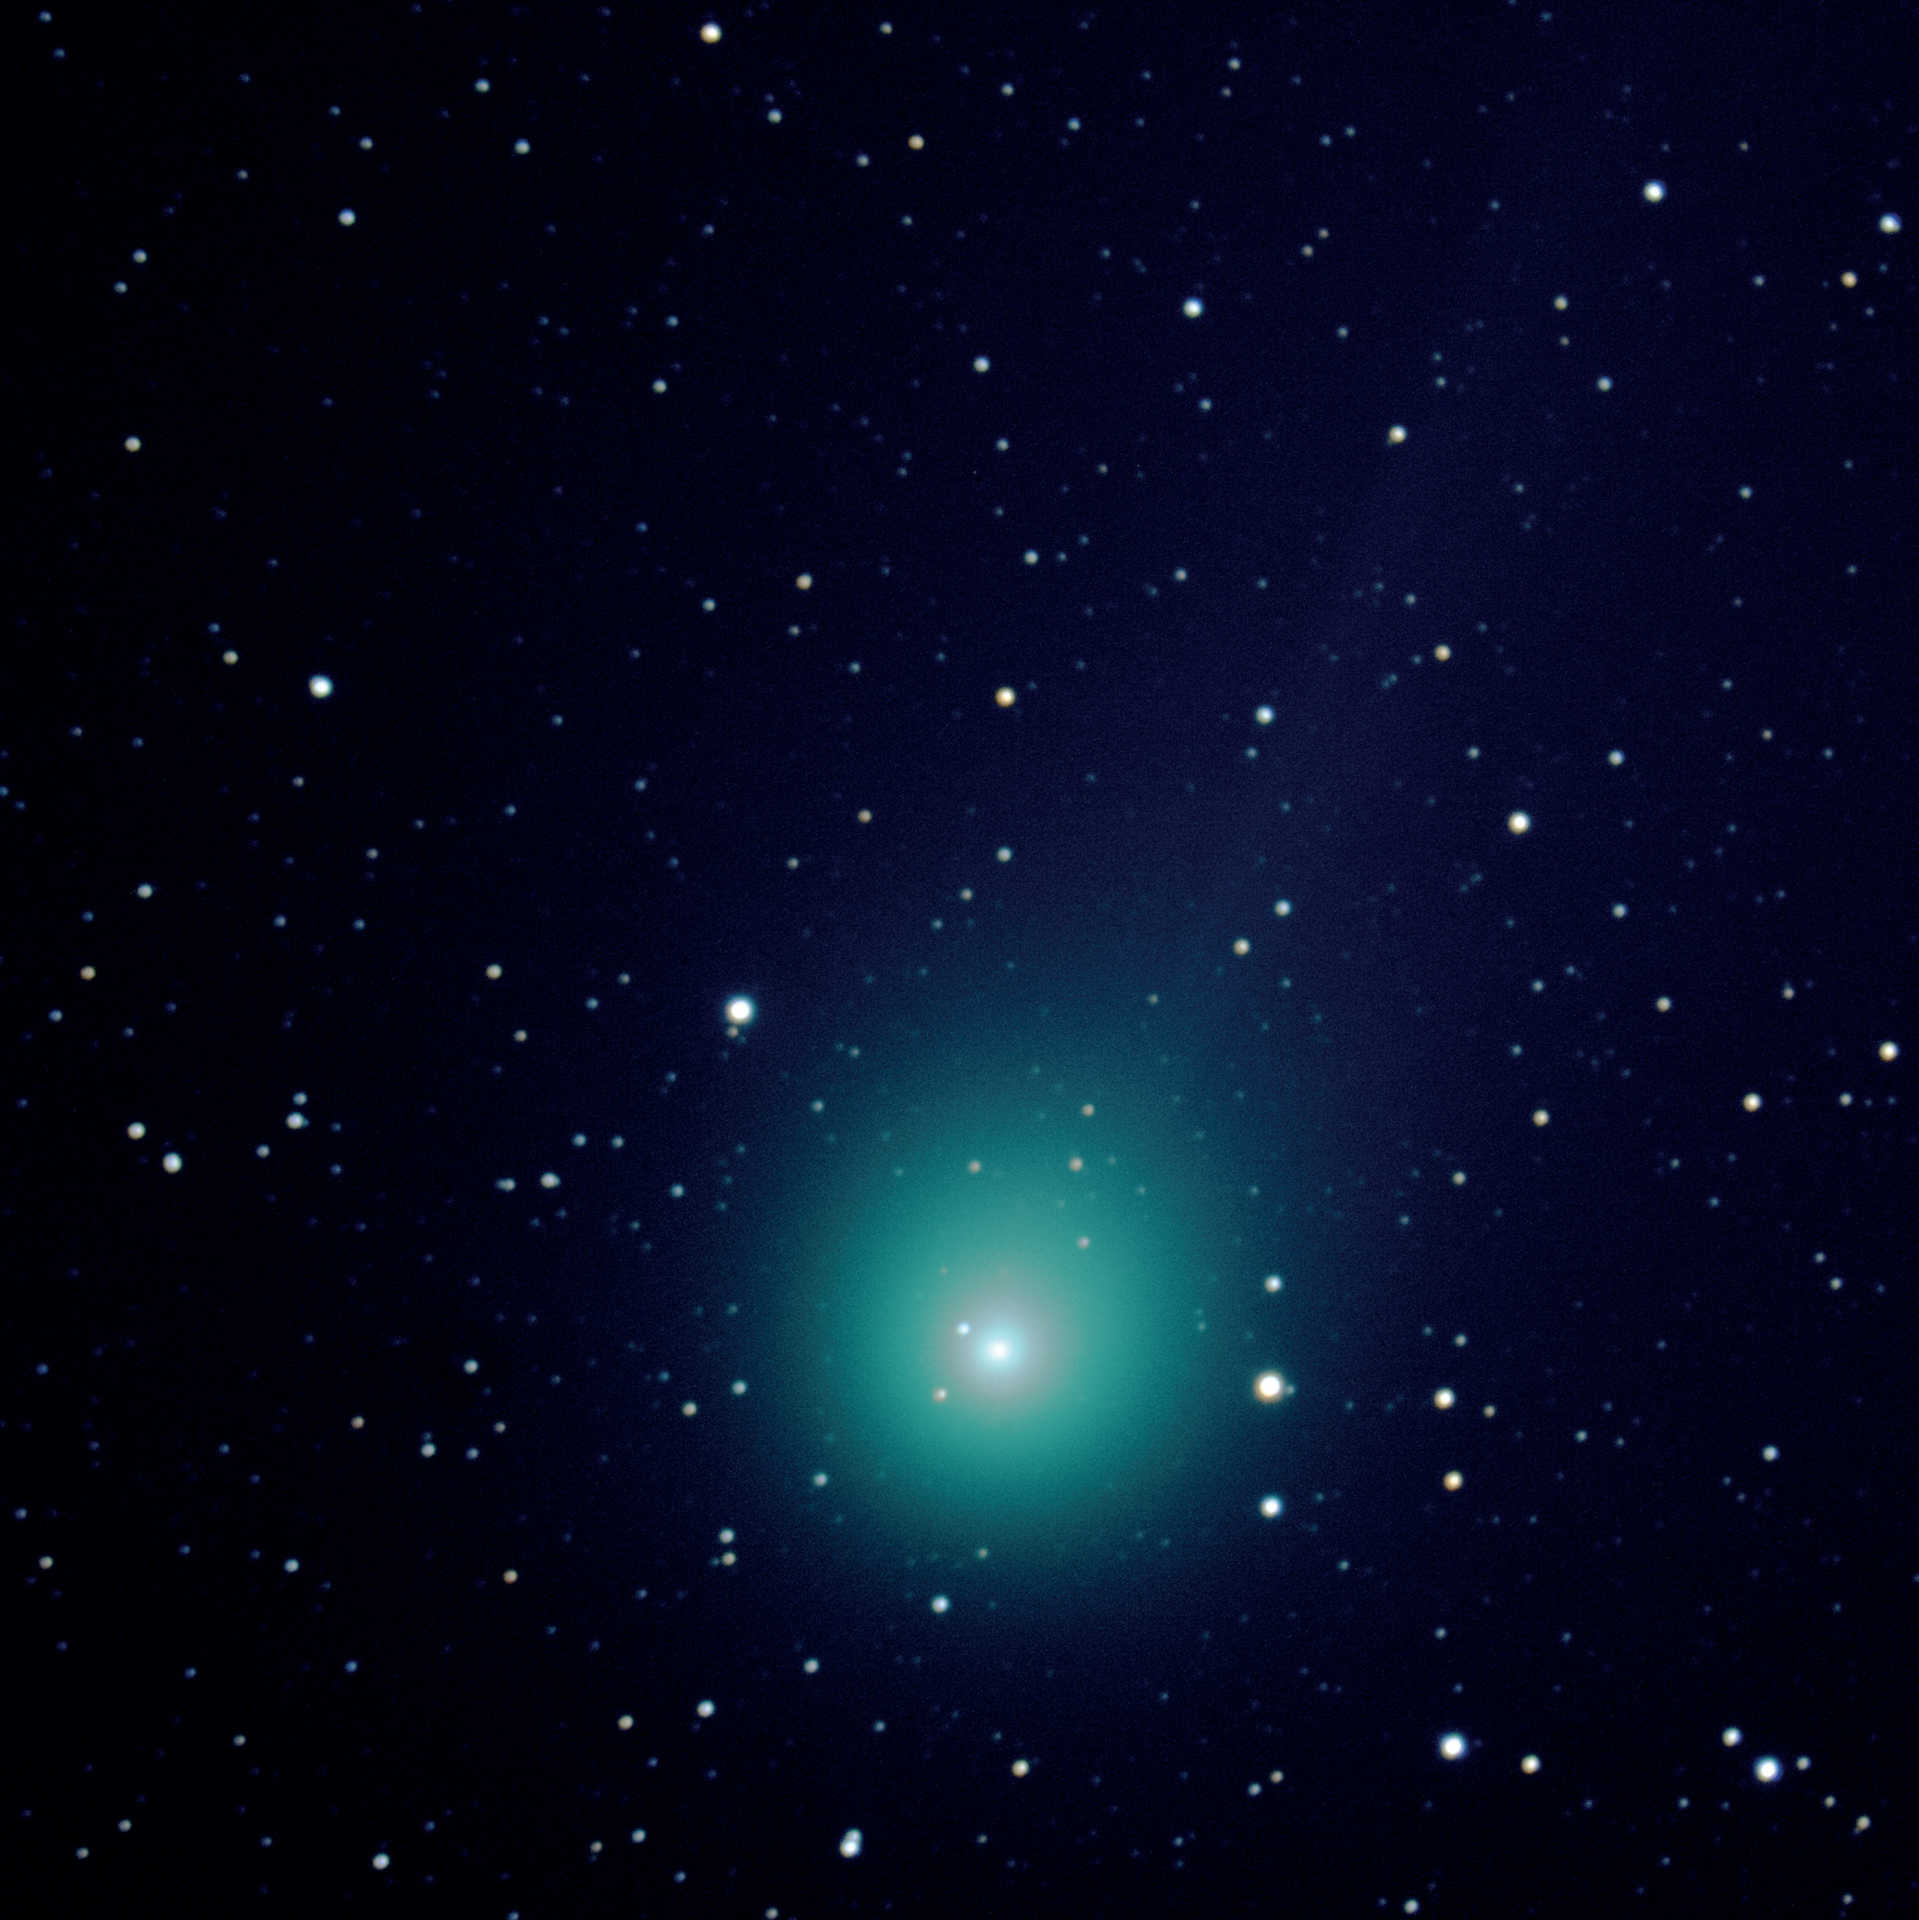 Kometen C/2014 Q2 (Lovejoy) med ett Schmidt-Cassegrain-teleskop med lång brännvidd. Den summerade bilden
togs den 7 mars 2015 några minuter efter bild 3, med en Canon 550D DSLR på ett teleskop med en brännvidd på 2 000 mm och en öppning på 280 mm. För summabilden användes fem bilder med en exponeringstid på 120 sekunder vardera (total exponeringstid: 10 minuter) som kombinerades med DeepSkyStacker och Photoshop. U. Dittler
